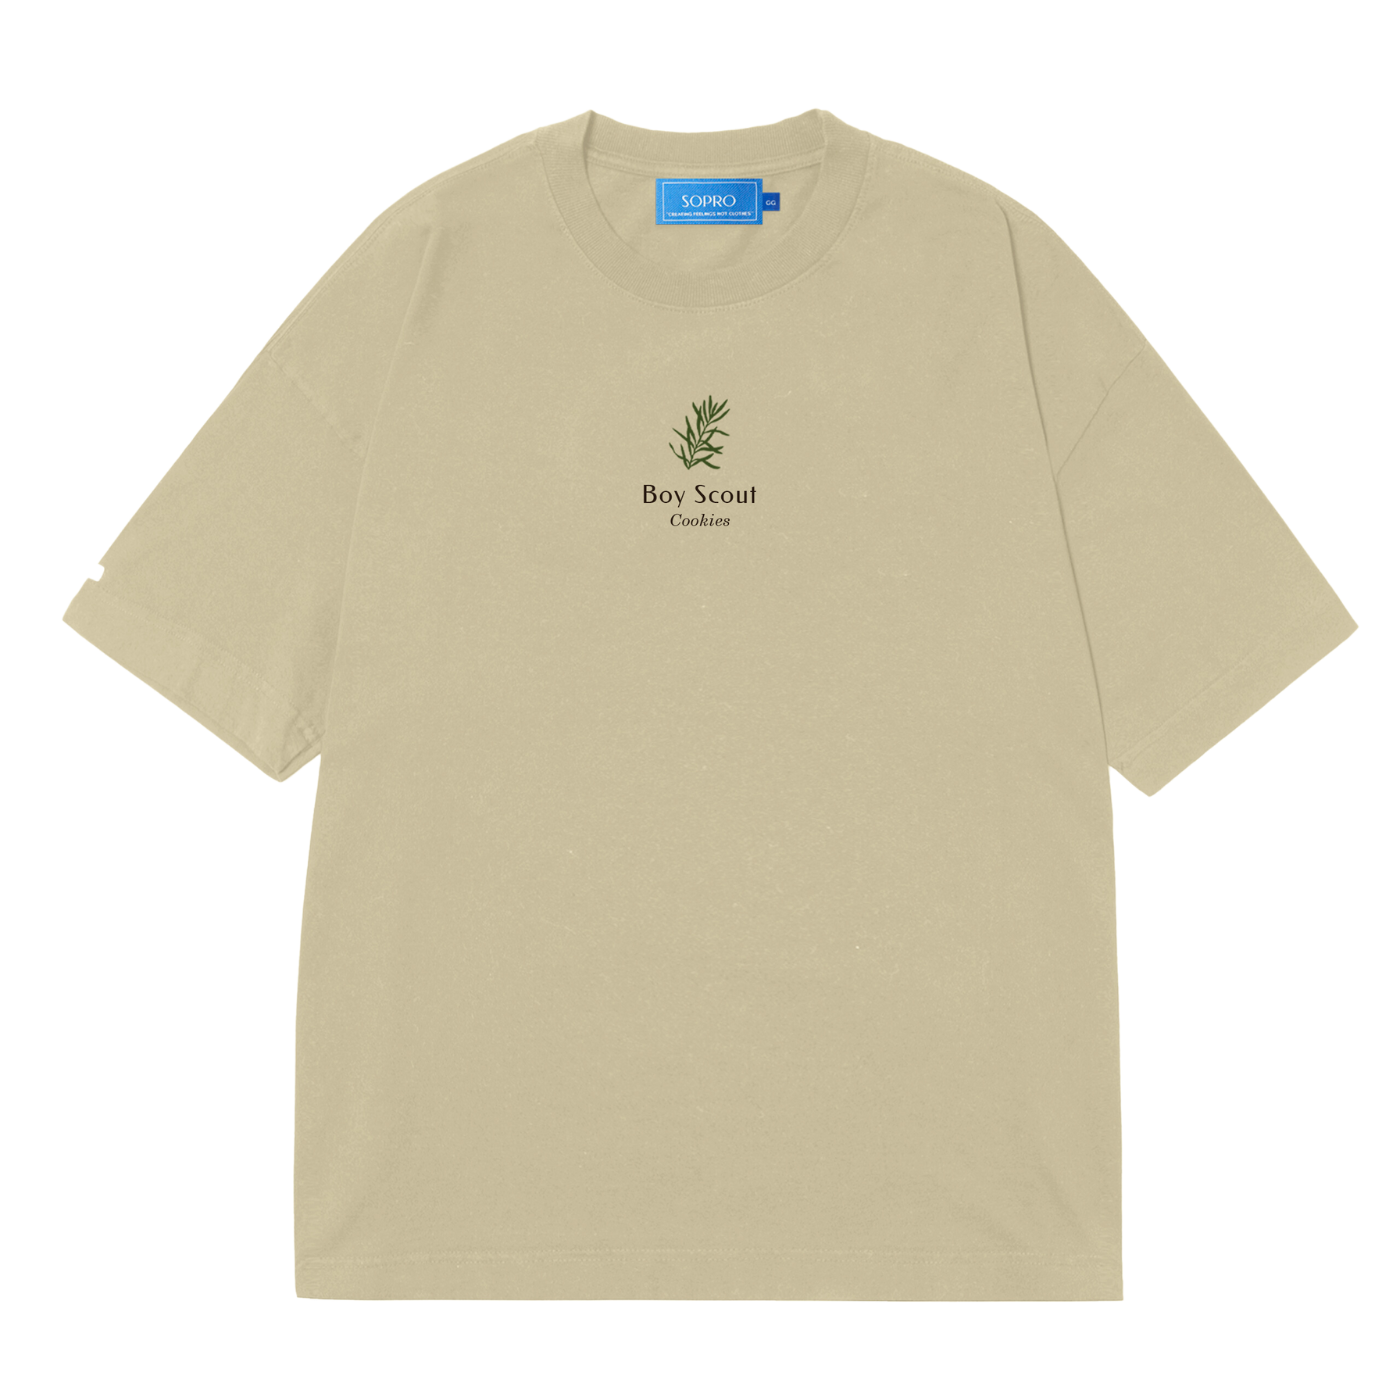 Camiseta Sopro Reach Pine